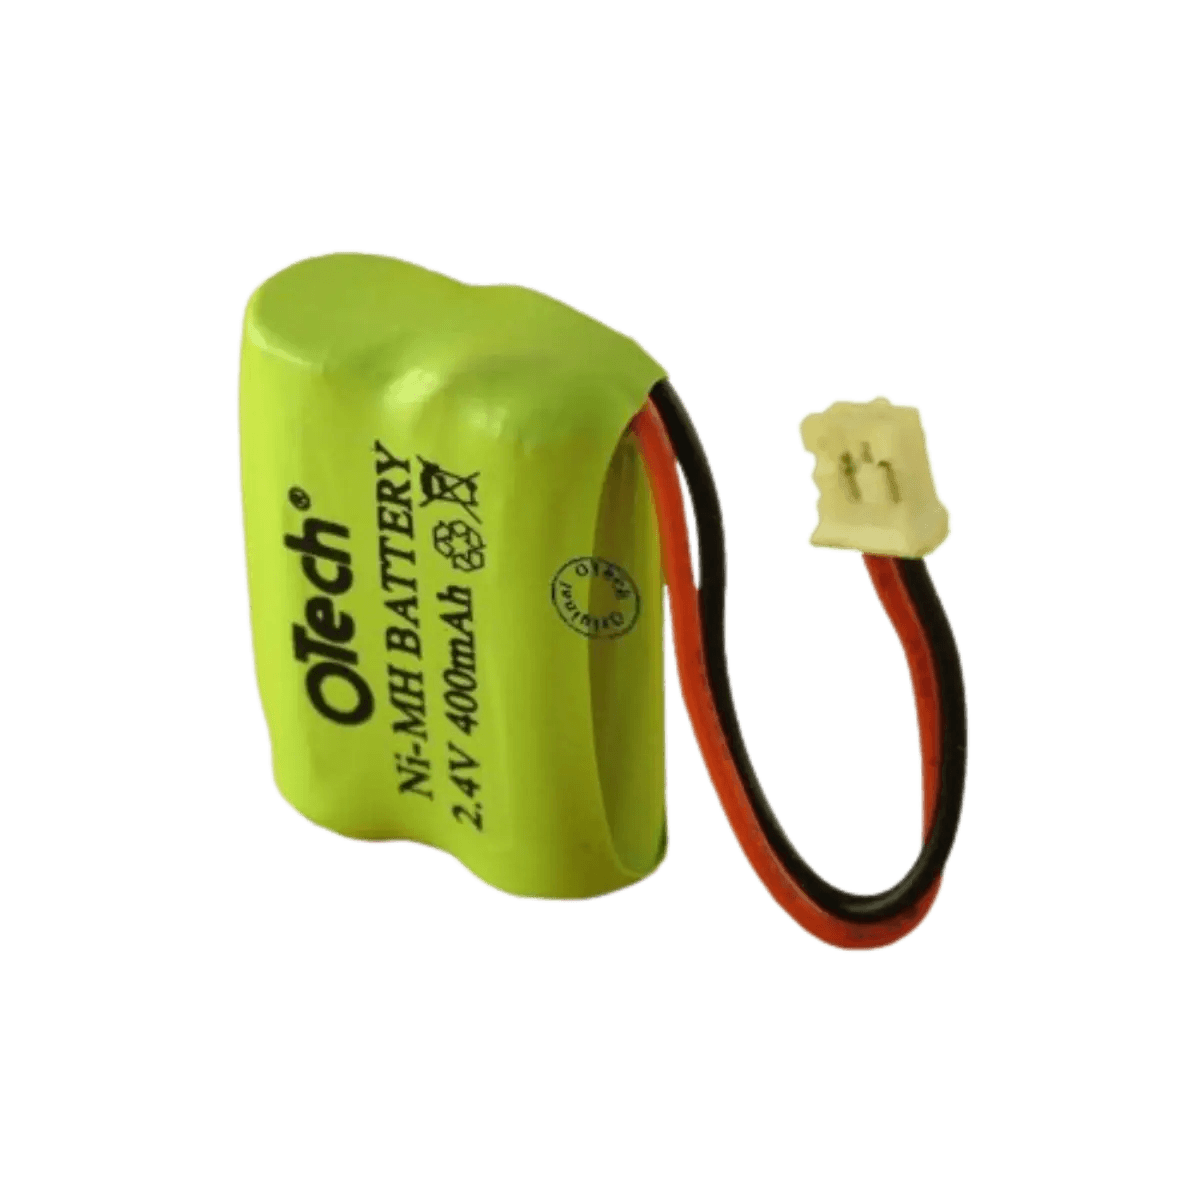 Batterie pour téléphone portable Doro, Matra et Audioline